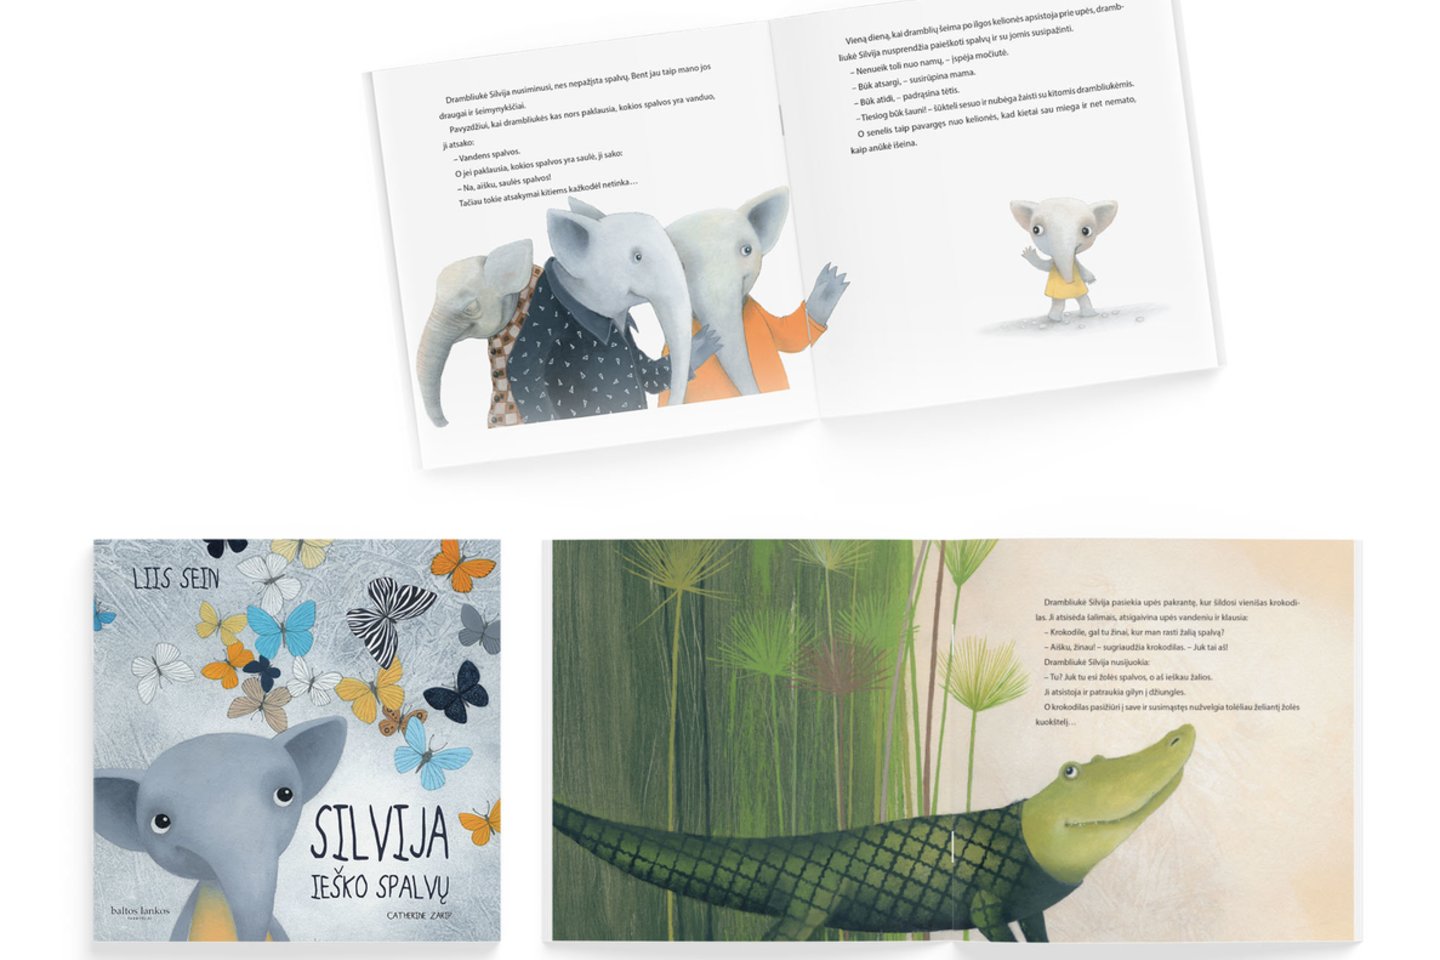 2019 metais knyga apie drambliukę įtraukta į TOP 5 geriausio dizaino knygų vaikams Estijoje sąrašą,<br>Pranešimo spaudai nuotr.